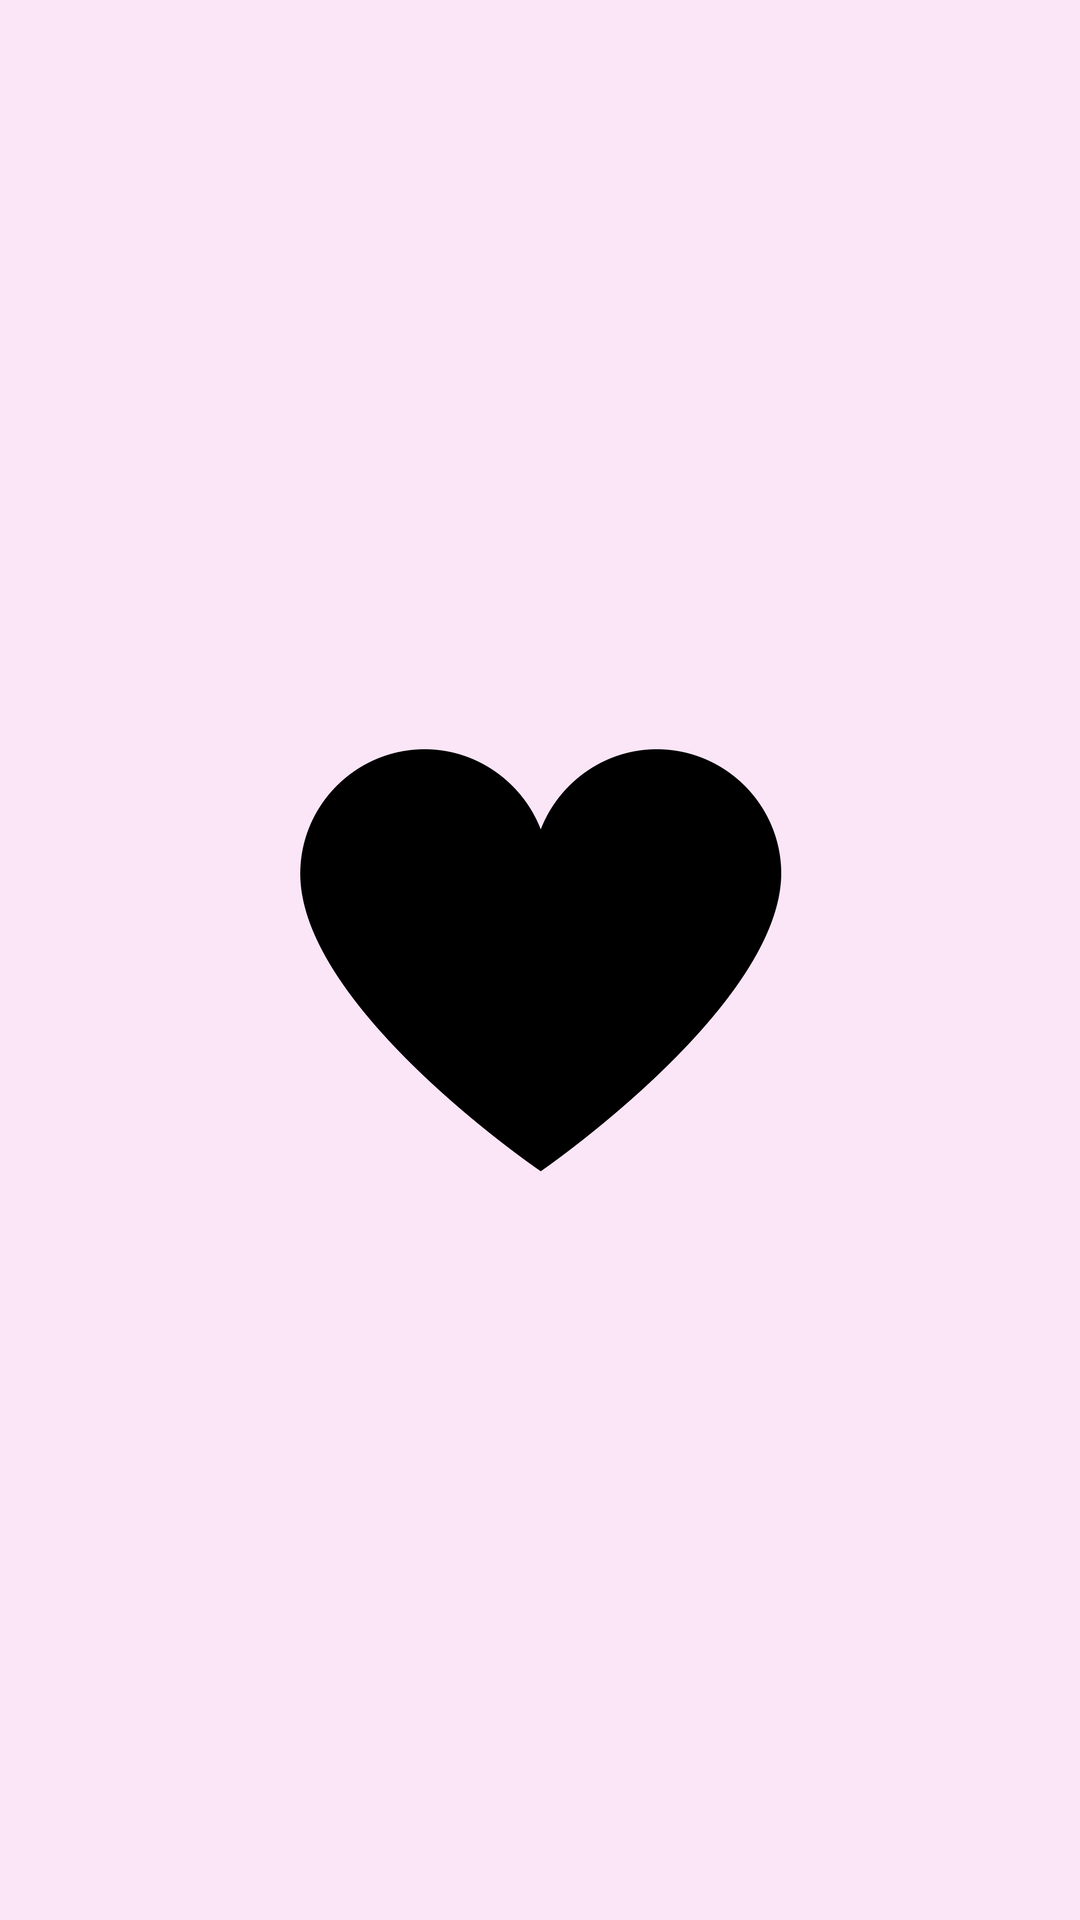 Love Instagram Logo - Instagram Icon. zayn. Instagram highlight icons